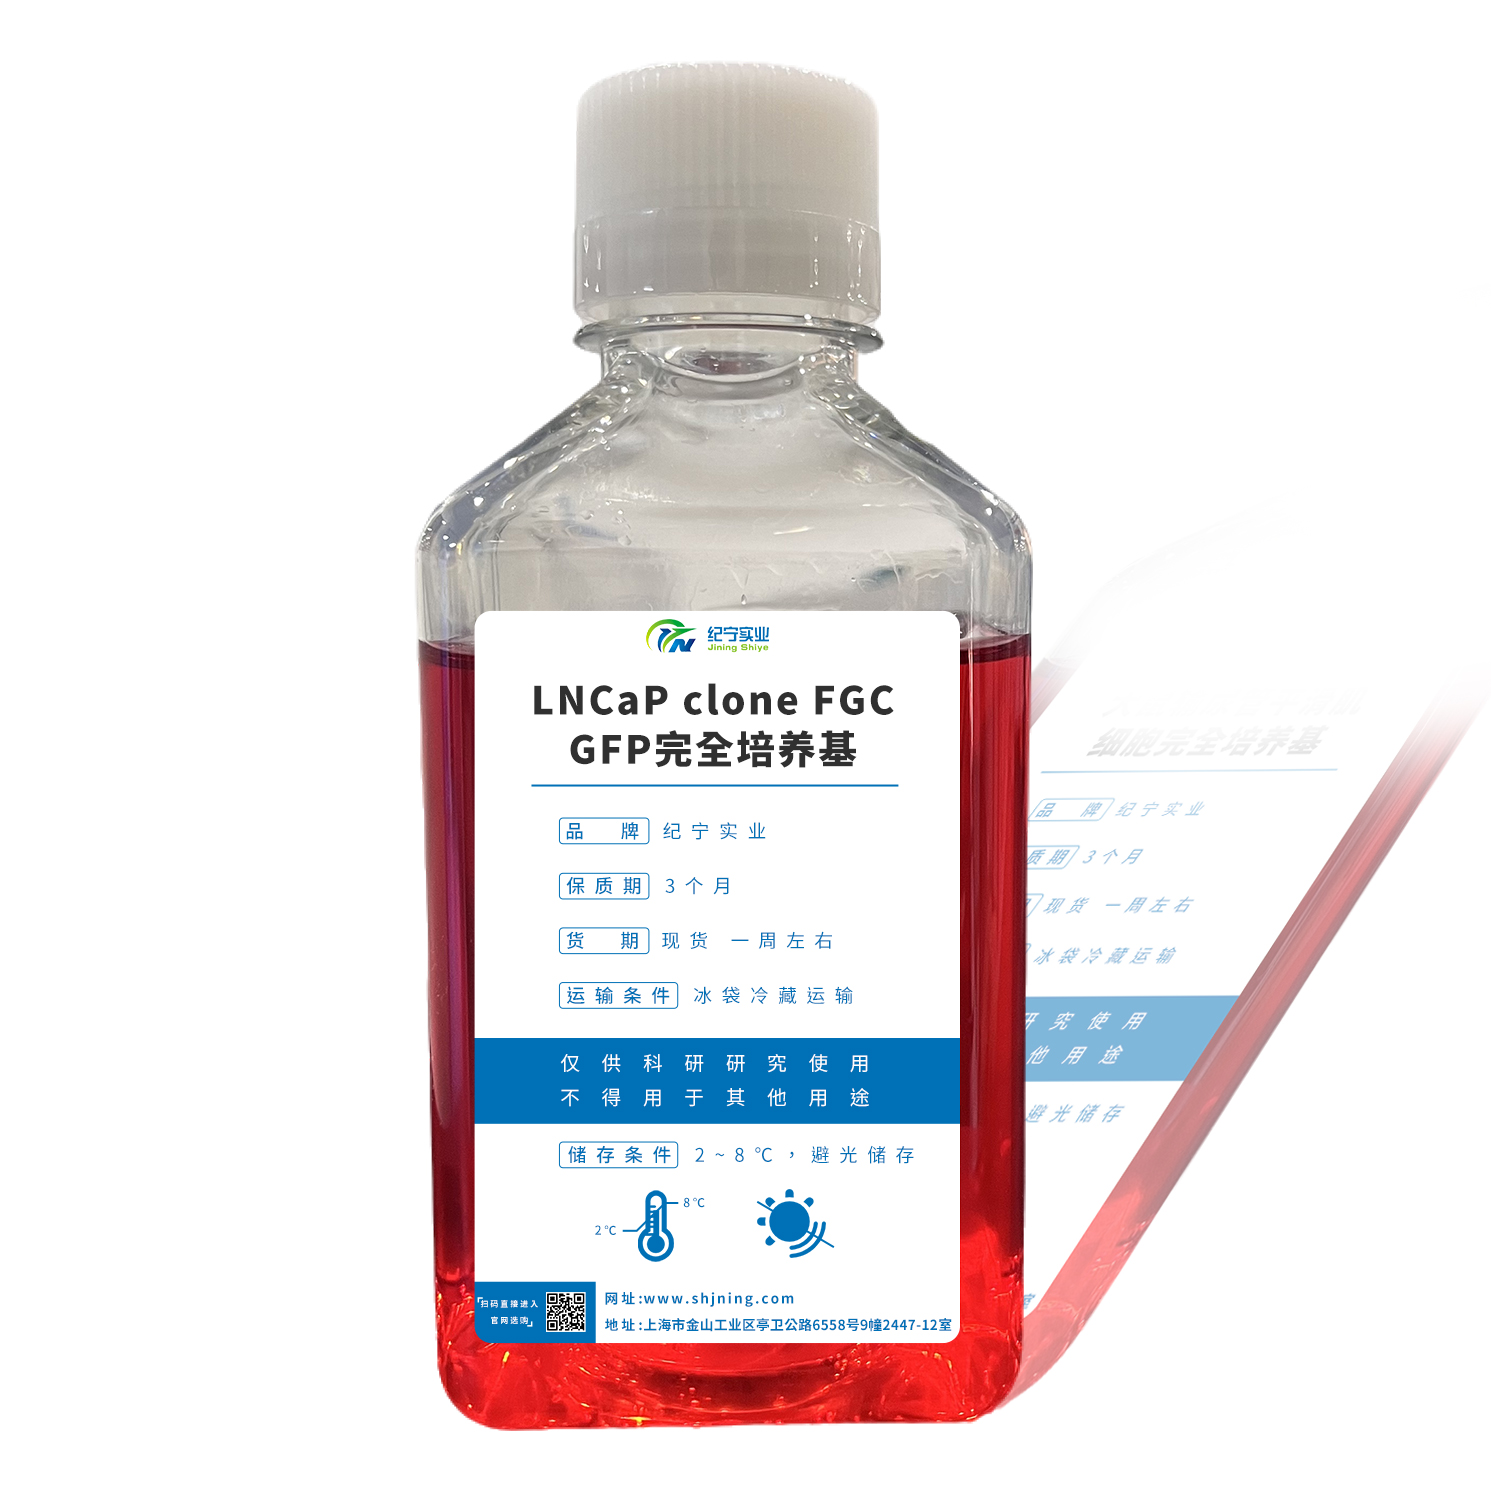 LNCaP clone FGC/GFP完全培养基